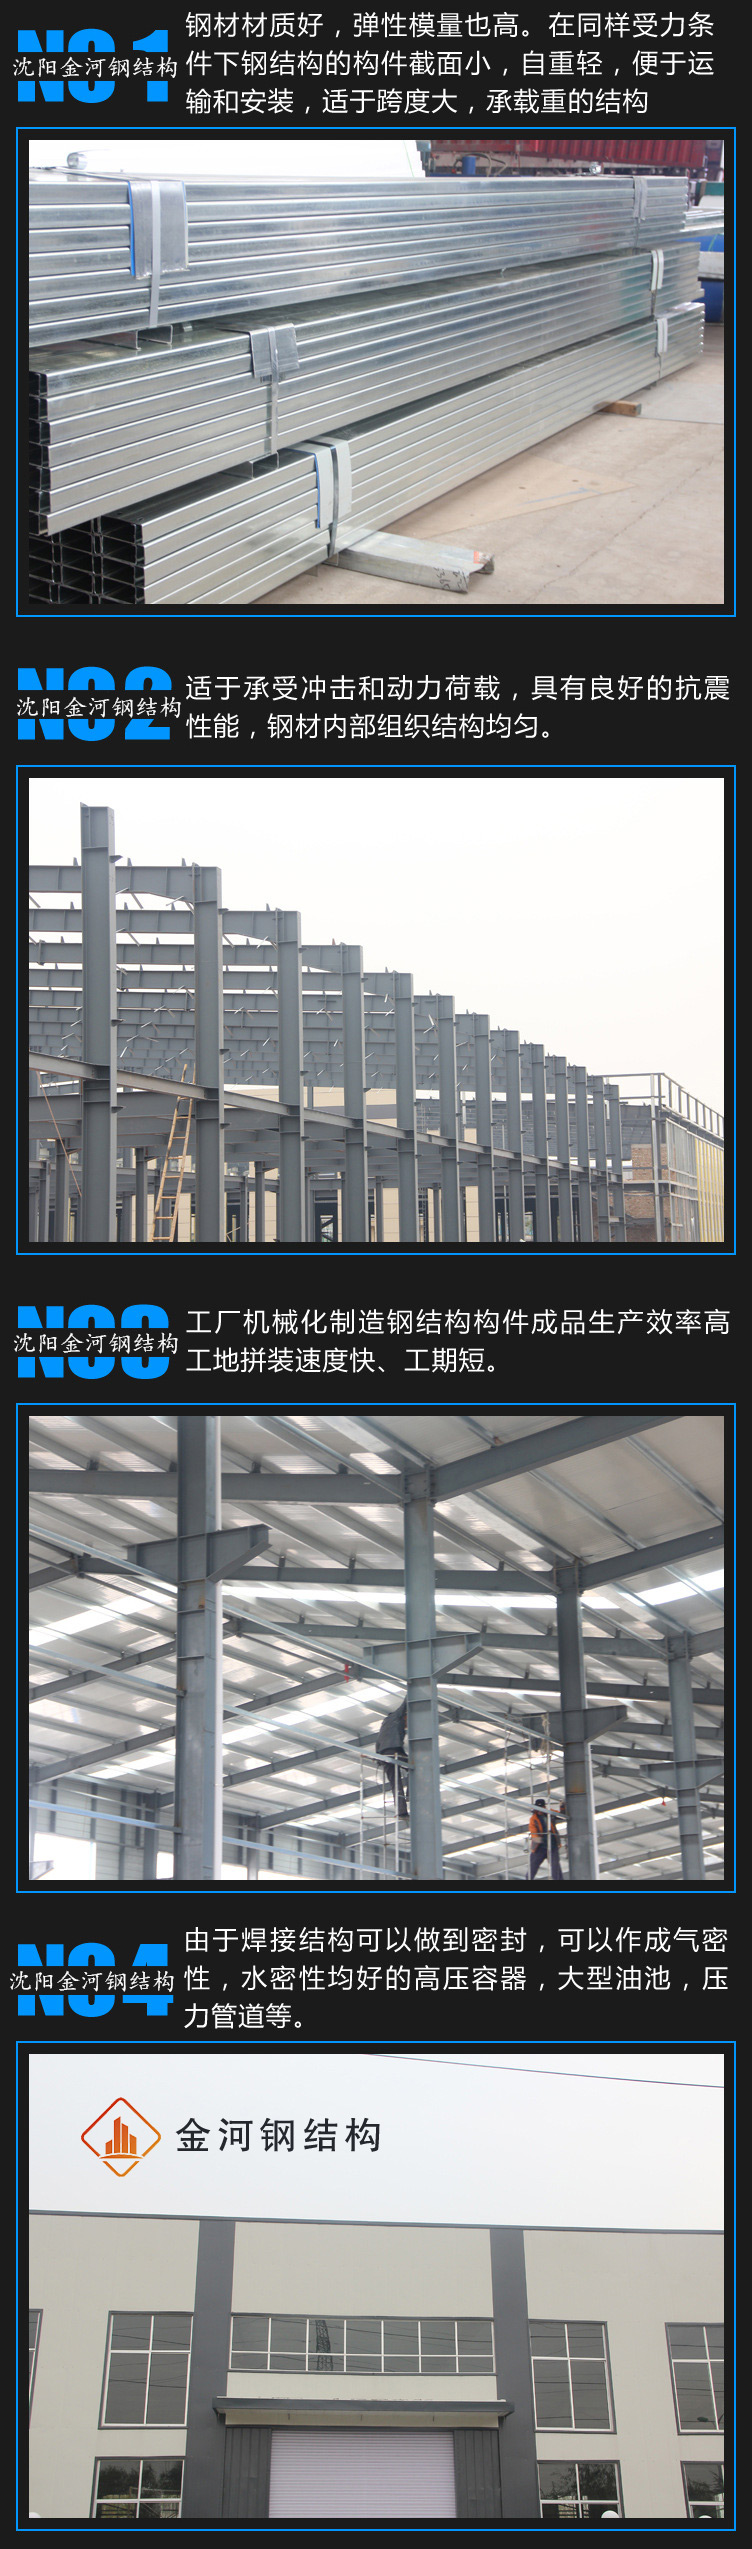 承接沈阳钢结构厂房工程